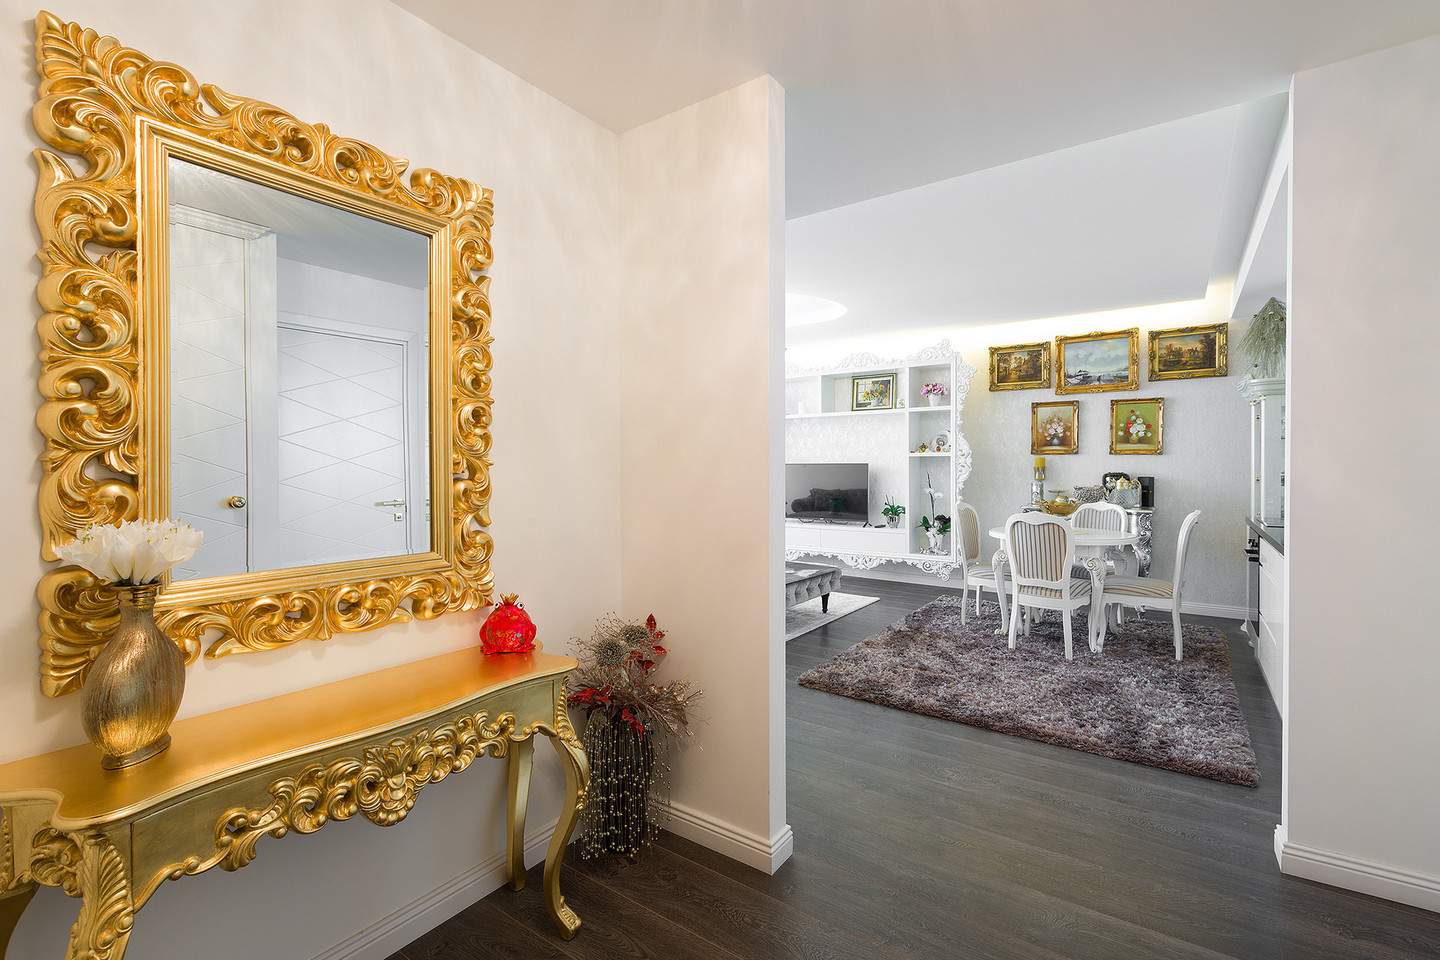 Prabangiame dviejų kambarių bute dominuoja klasikinio stiliaus baldai, išskyrus virtuvės ir vonios zonas, kurios įrengtos moderniai.<br>„Capital“ nuotr.